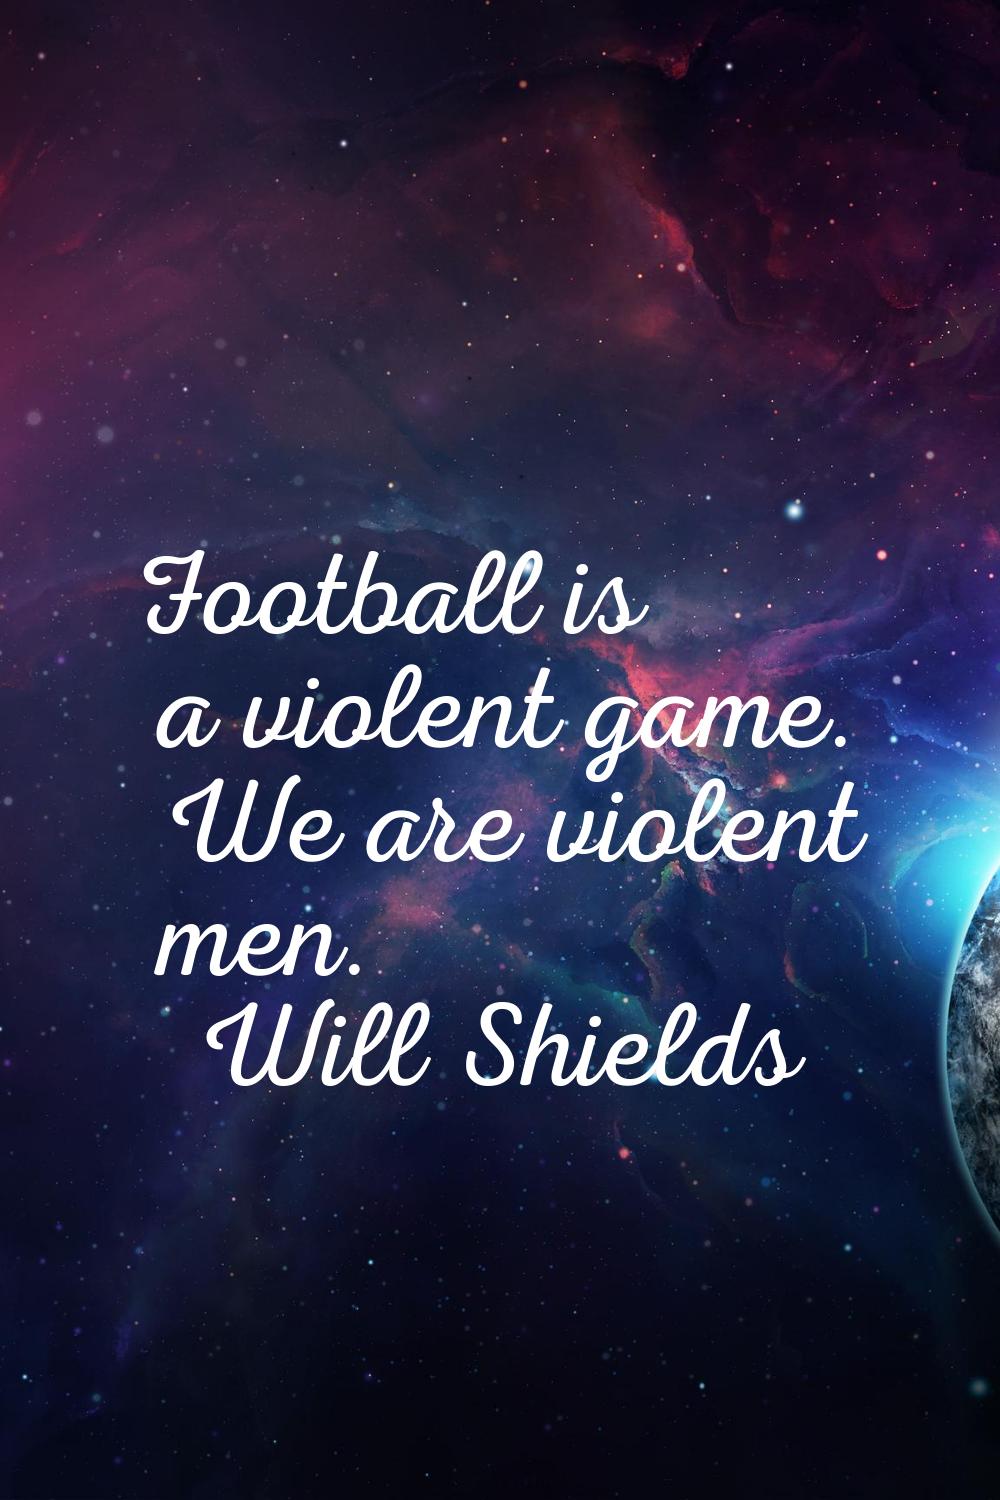 Football is a violent game. We are violent men.